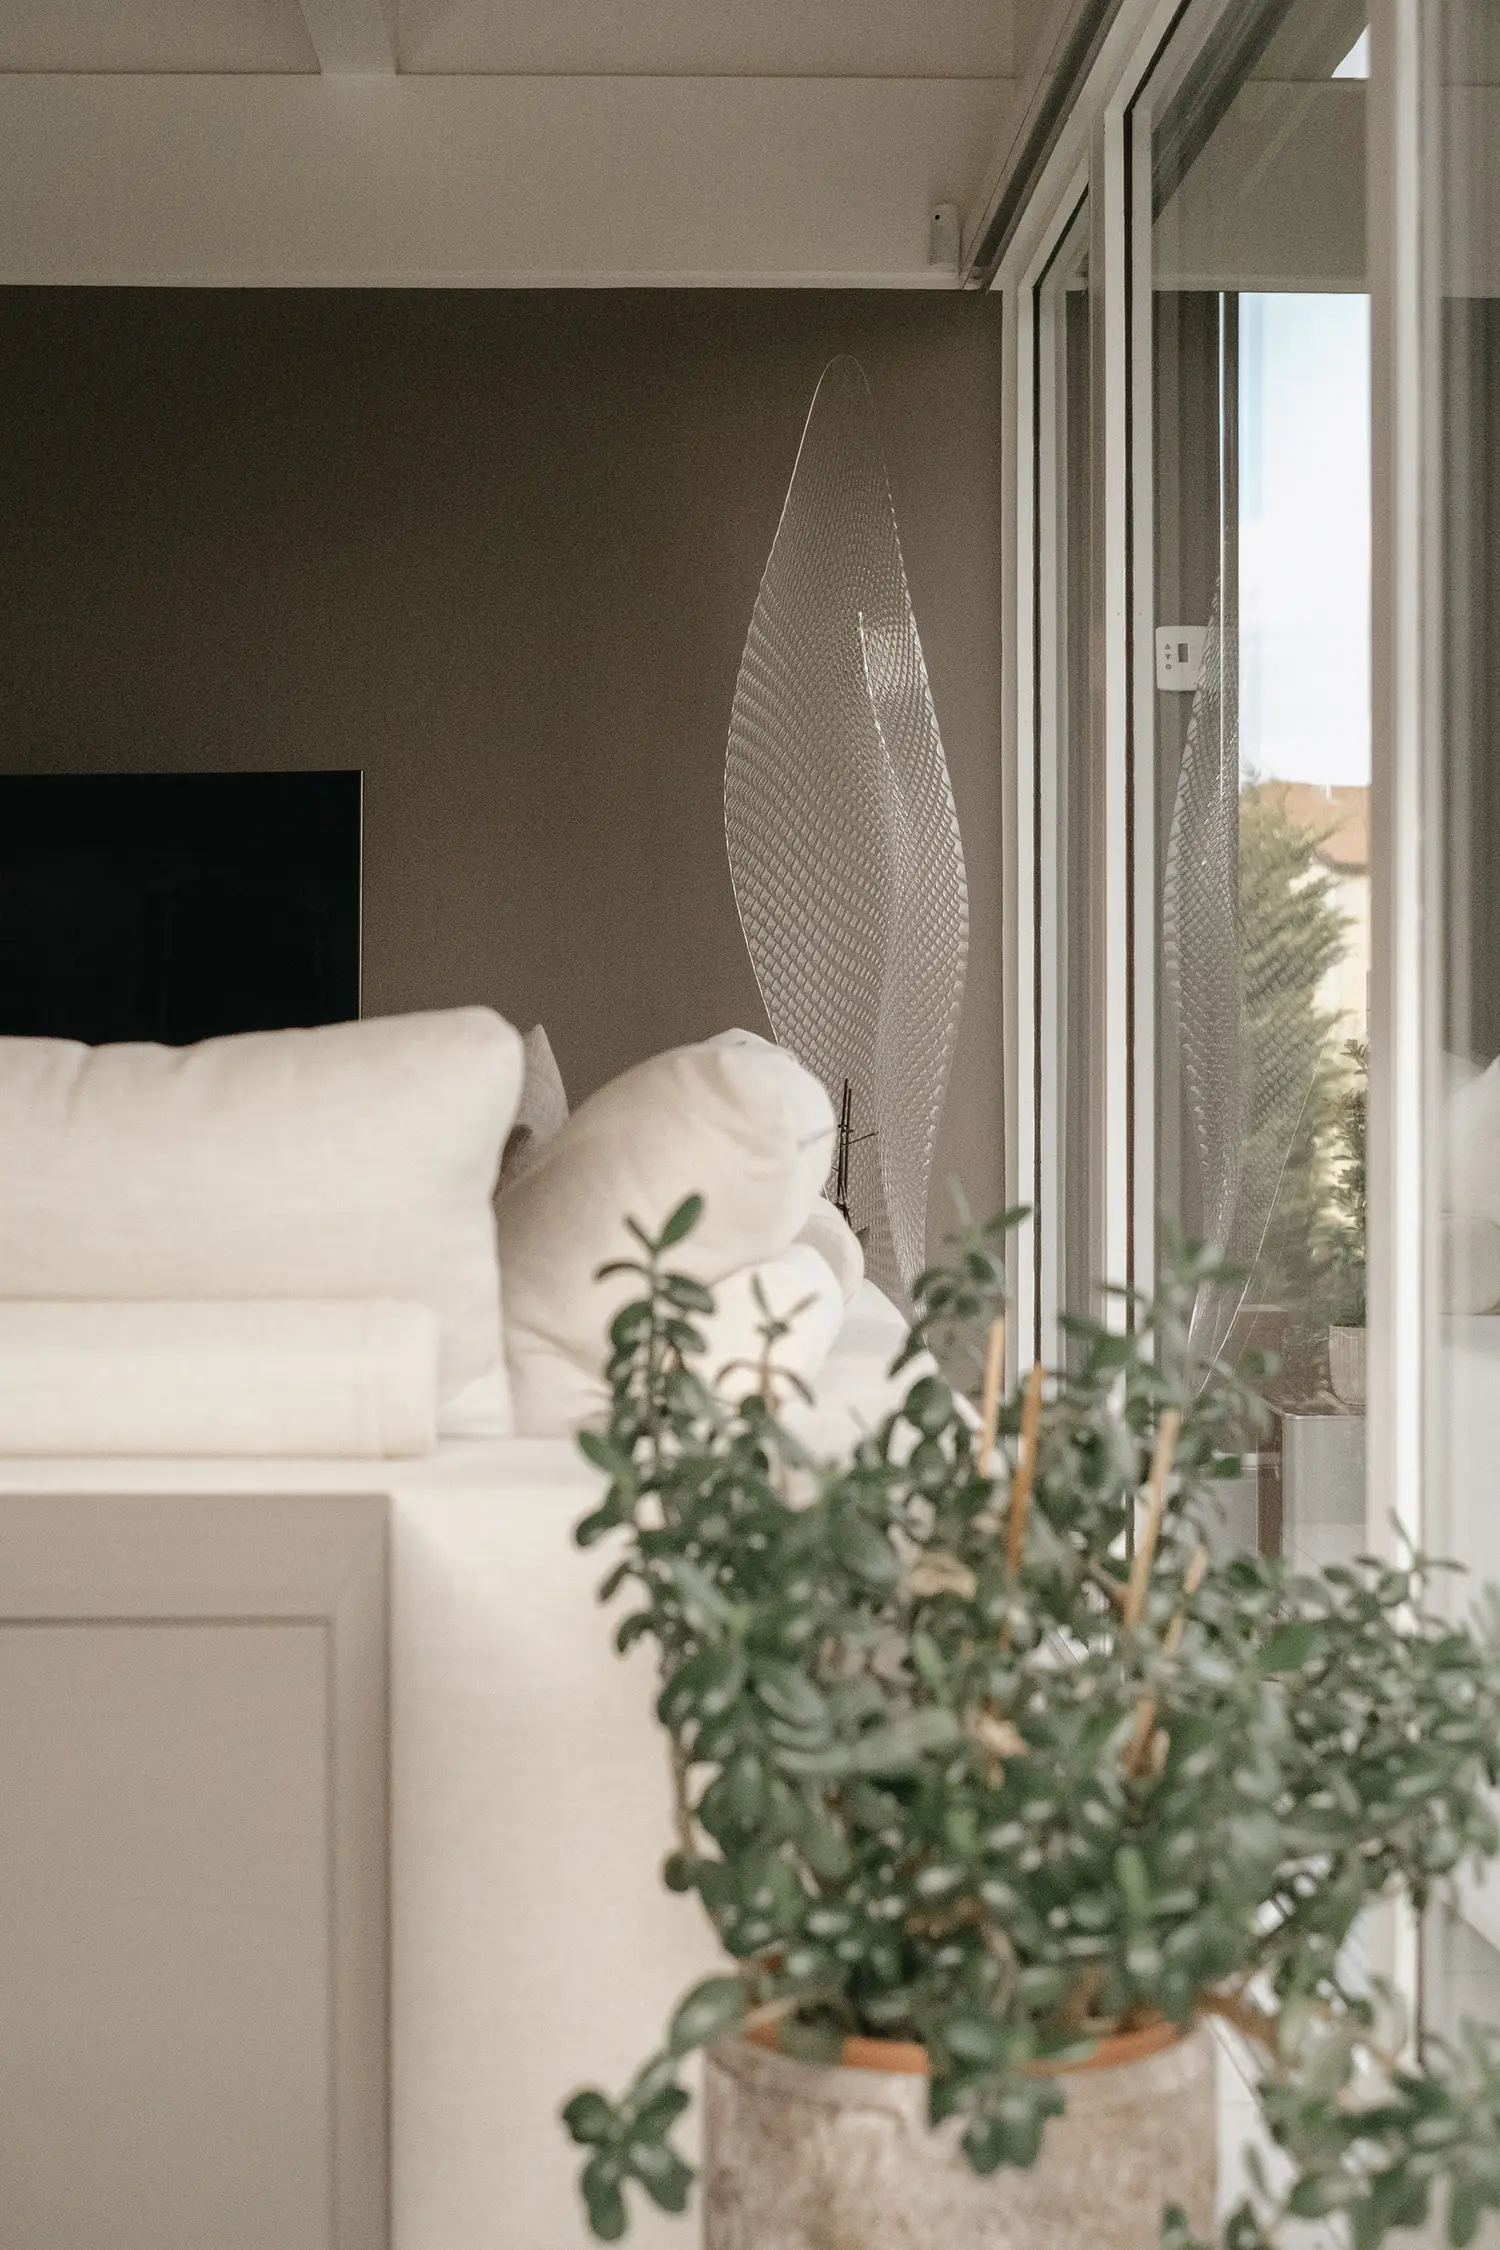 Photo du dossier du canapé avec détails sur la couleur des murs et du lampadaire d'Artemide ; projet de rénovation par le studio Elles Interior Design.